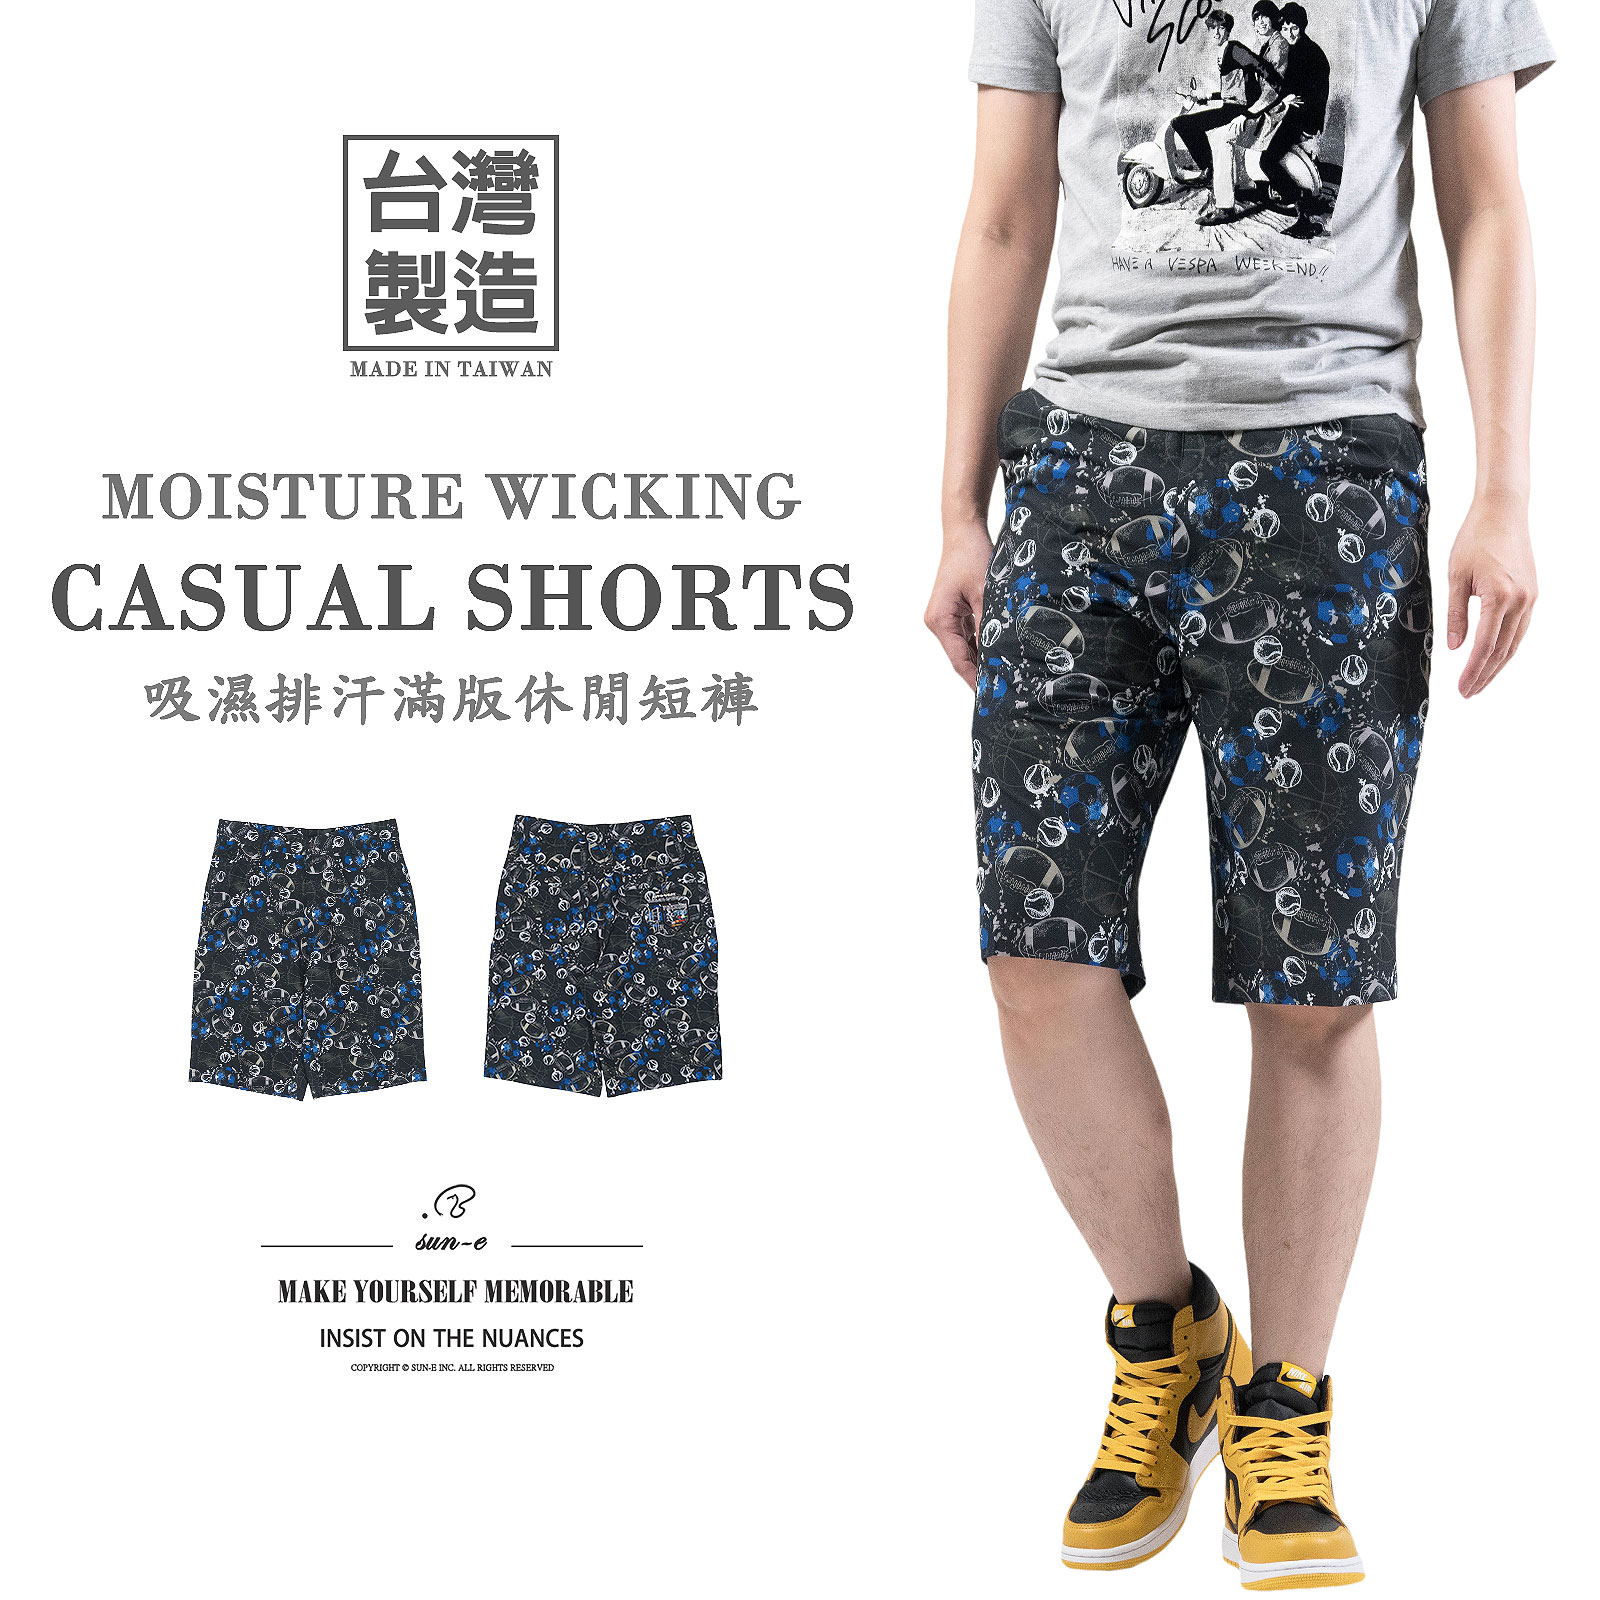 吸濕排汗短褲 台灣製短褲 滿版球類運動圖案休閒短褲 排汗速乾彈性短褲 機能布料休閒褲 百貨公司等級 Made In Taiwan Moisture Wicking Shorts Many Types Of Ball Sports All-Over Print Casual Shorts Quick Drying Breathable Fabric Short Pants(384-2315-08)灰綠色 L XL 2L 3L 4L (腰圍32~38英吋 / 81~97公分) 男 [實體店面保障] sun-e